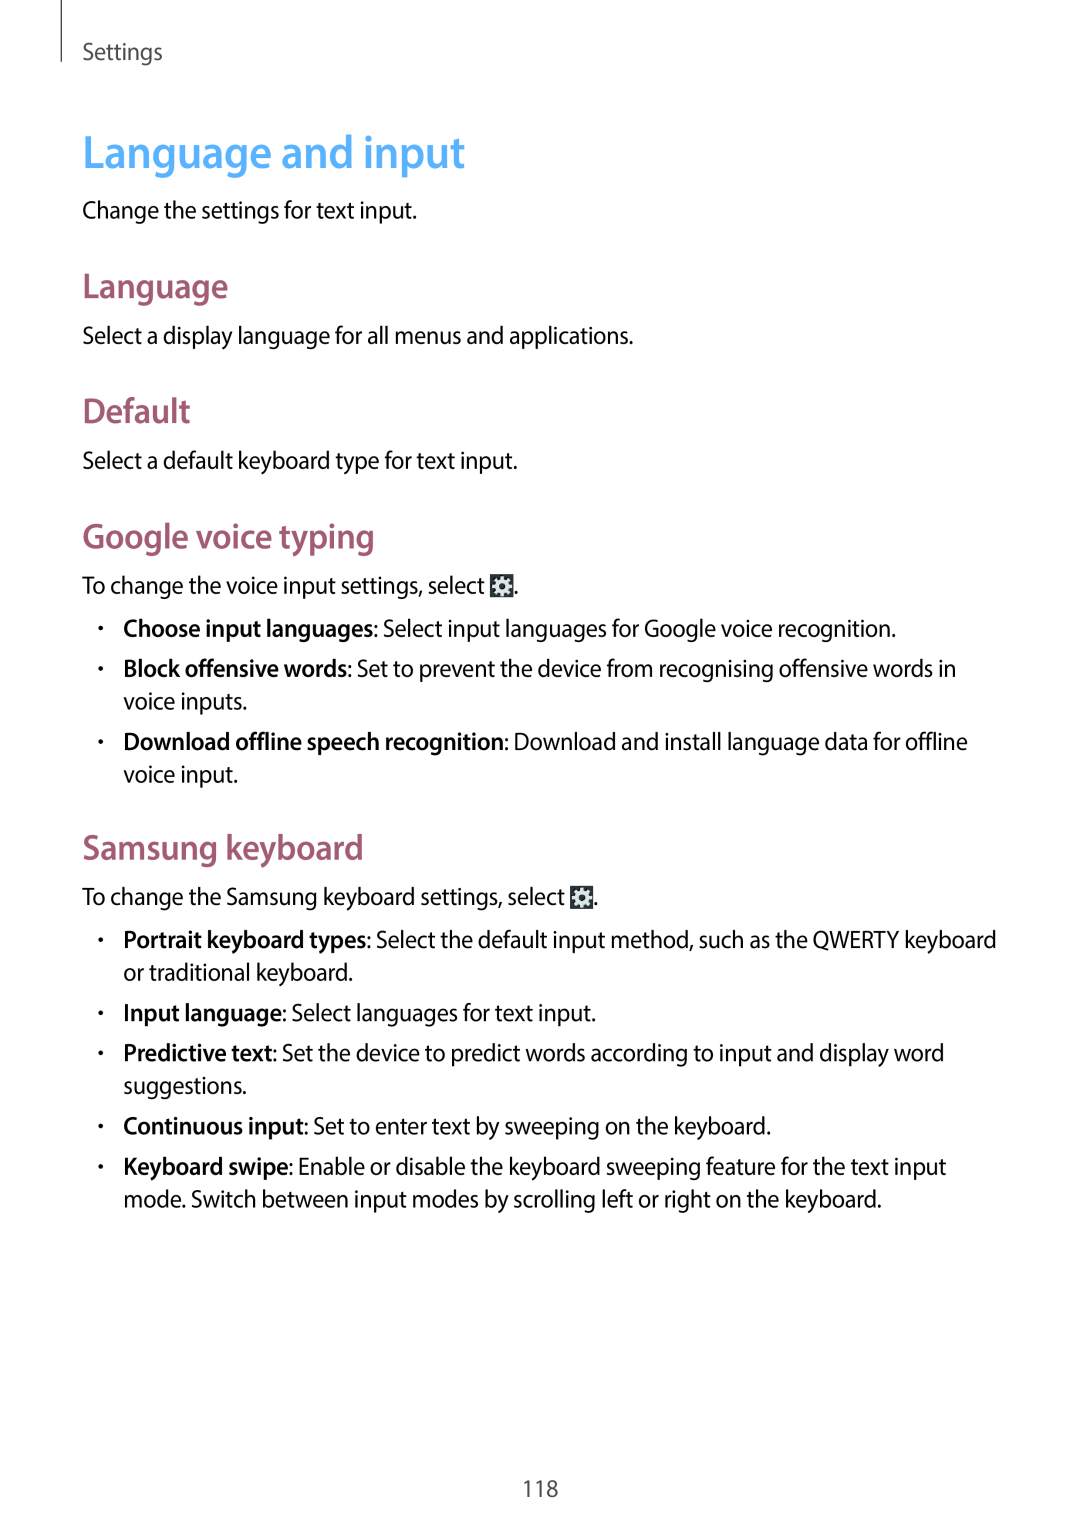 Samsung EK-GC100 user manual Language and input, Default, Google voice typing, Samsung keyboard, Settings 